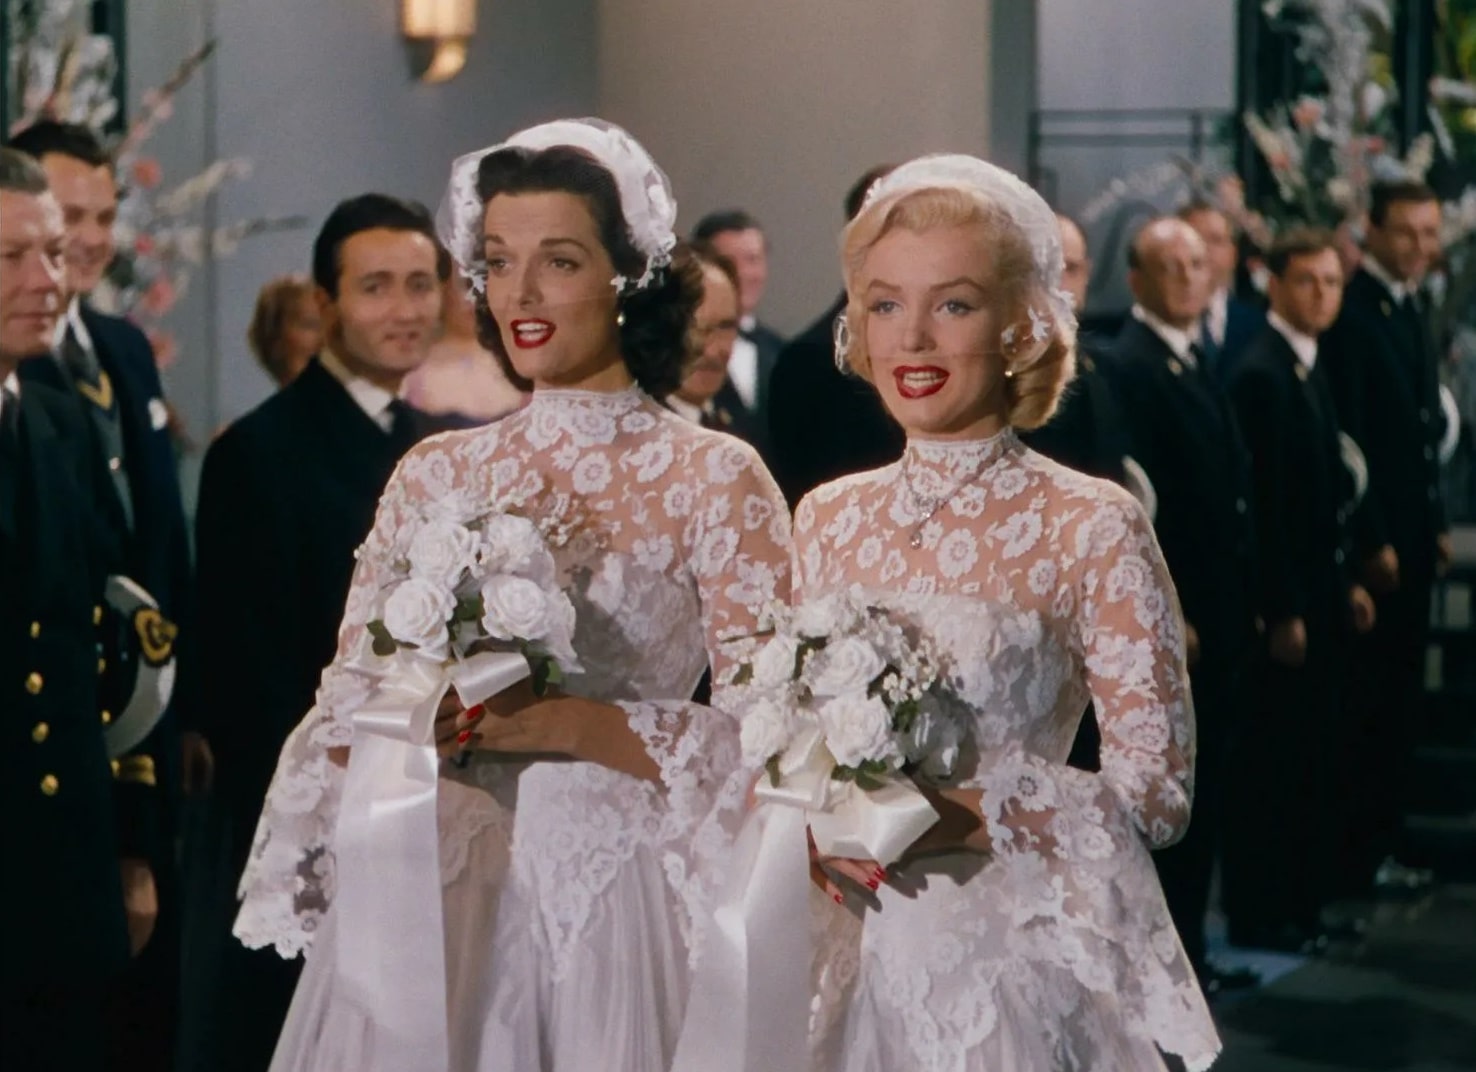 Джентльмены предпочитают блондинок / Gentlemen Prefer Blondes (1953): кадр из фильма